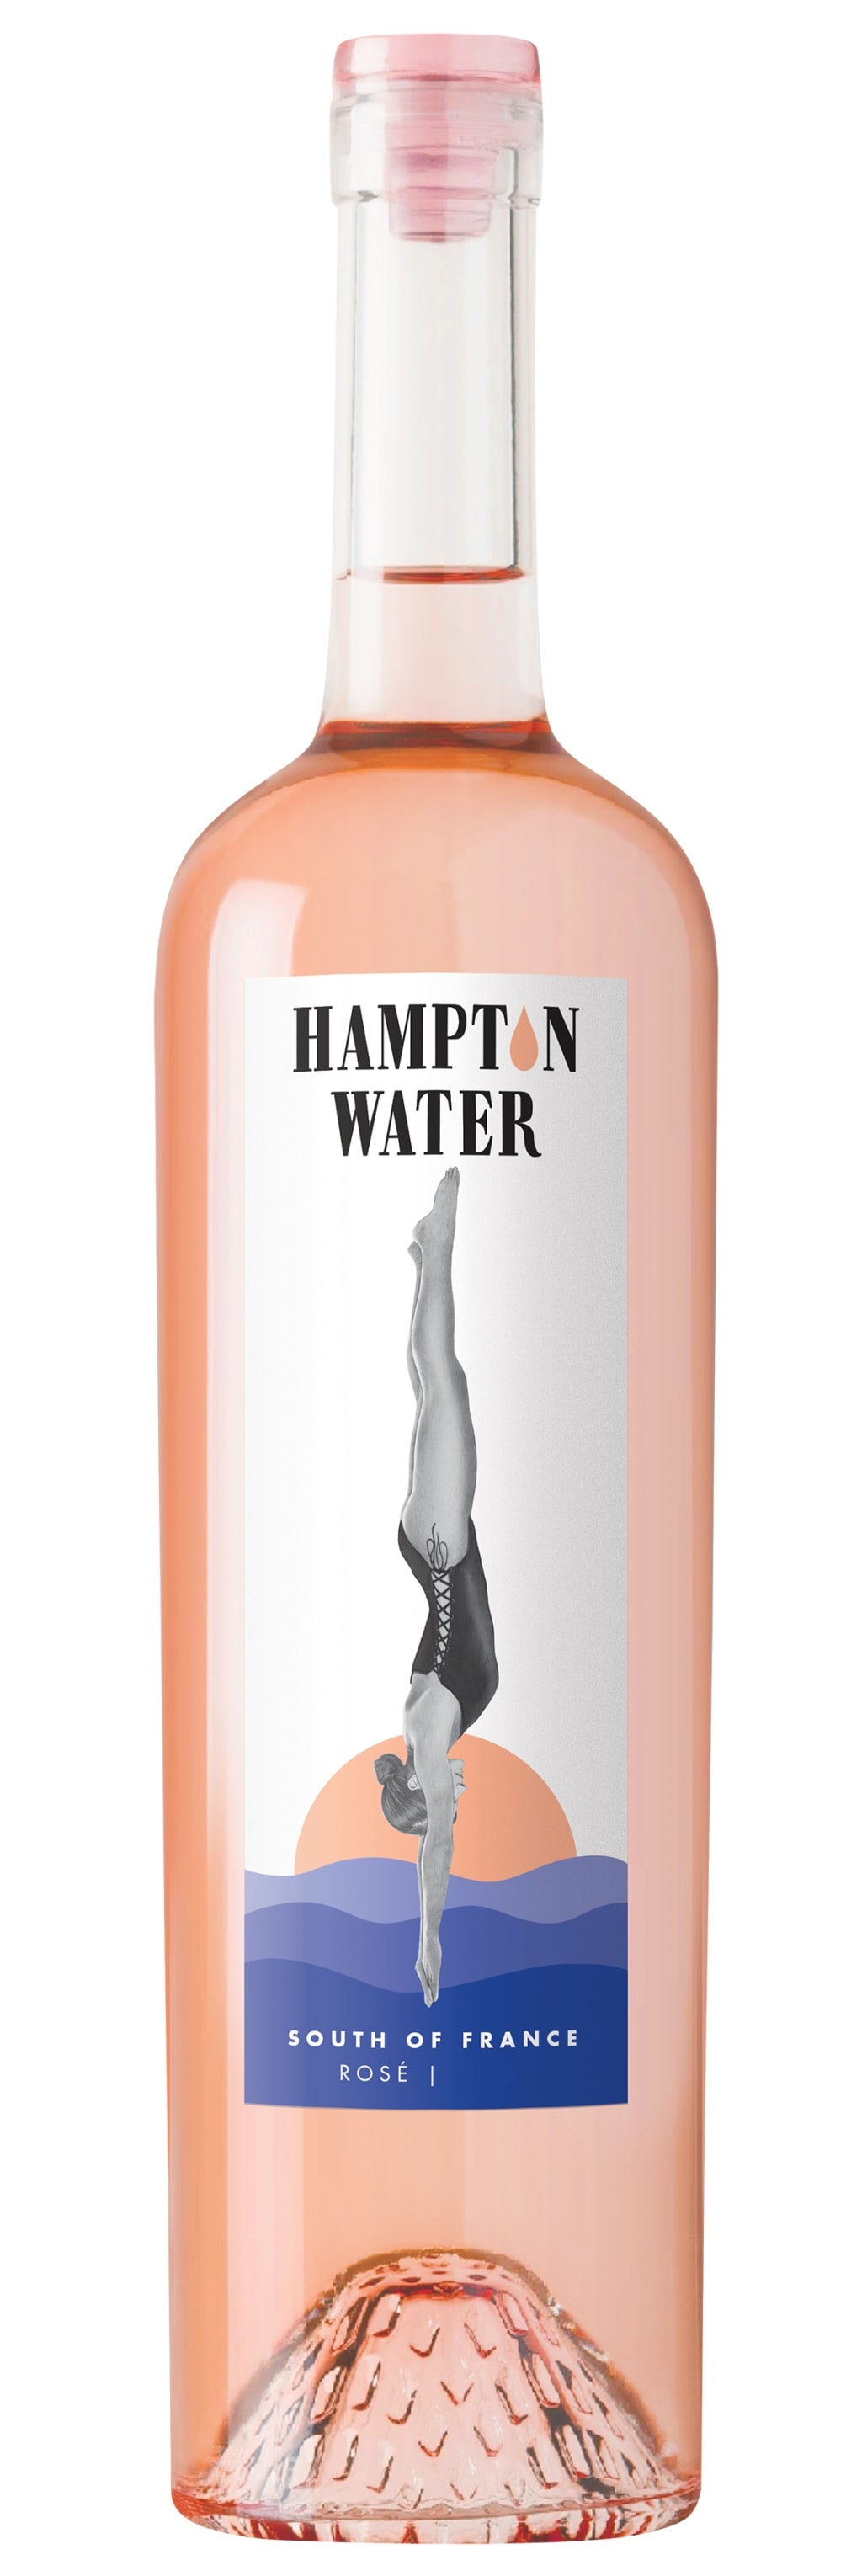 HAMPTON WATER ROSE 2021